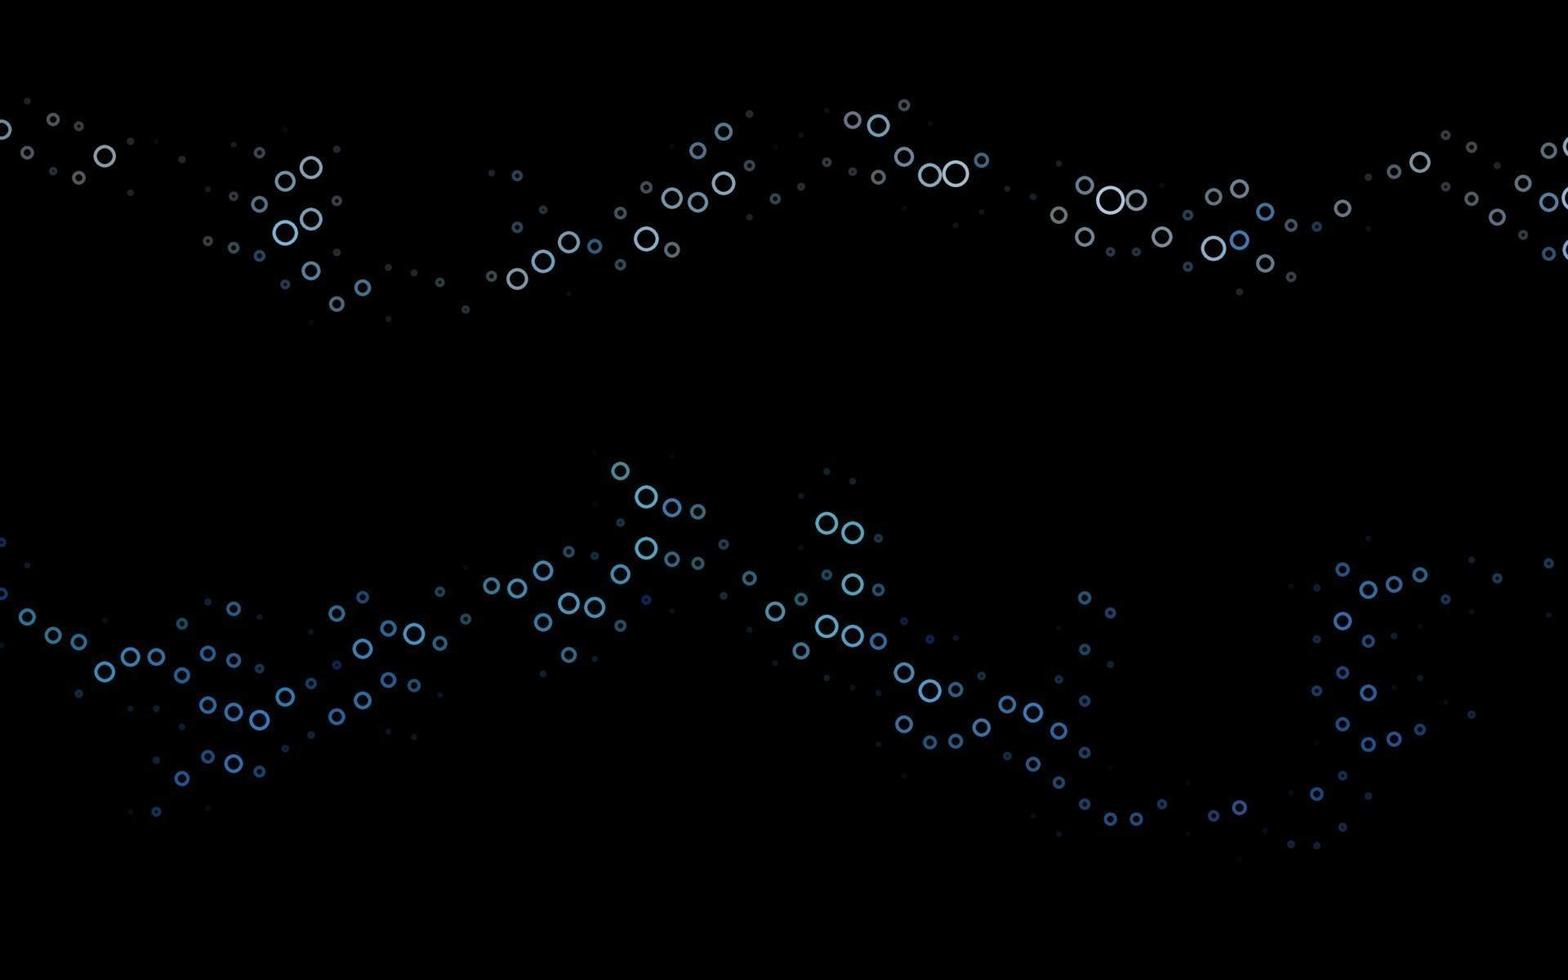 padrão de vetor azul escuro com esferas.